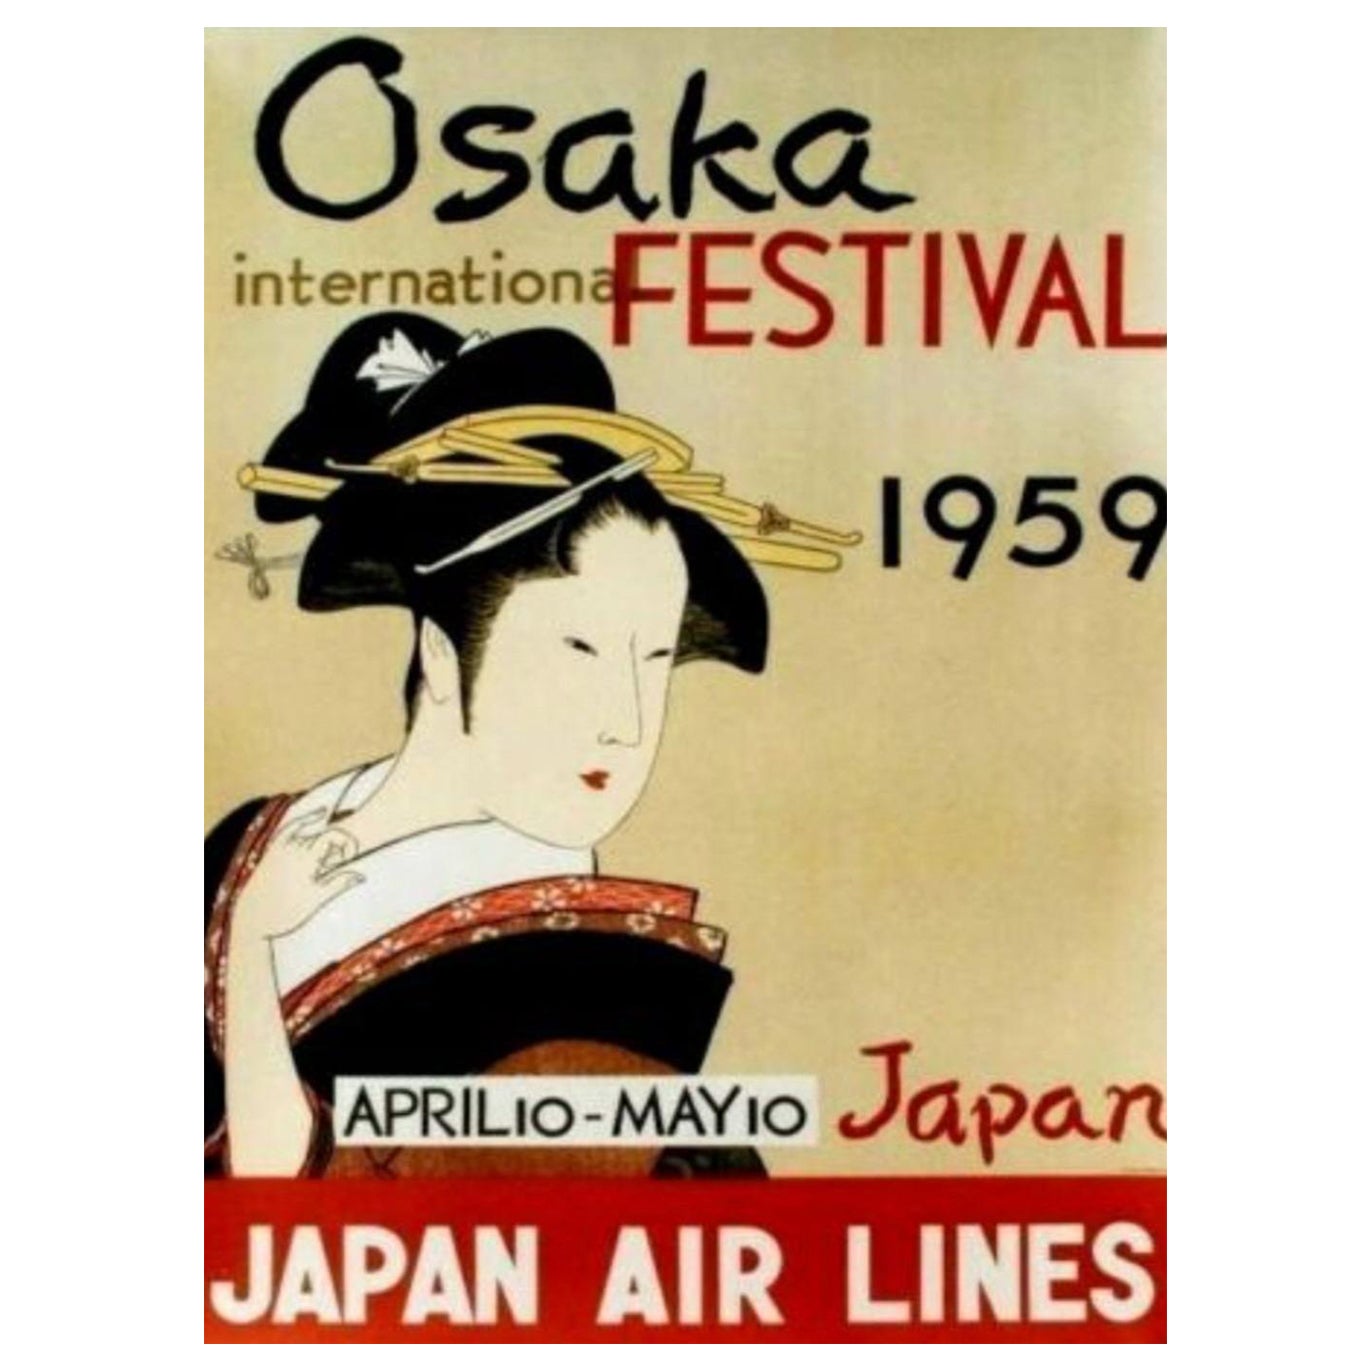 Affiche rétro originale du Festival international d'Osaka, Japan Air Lines, 1959